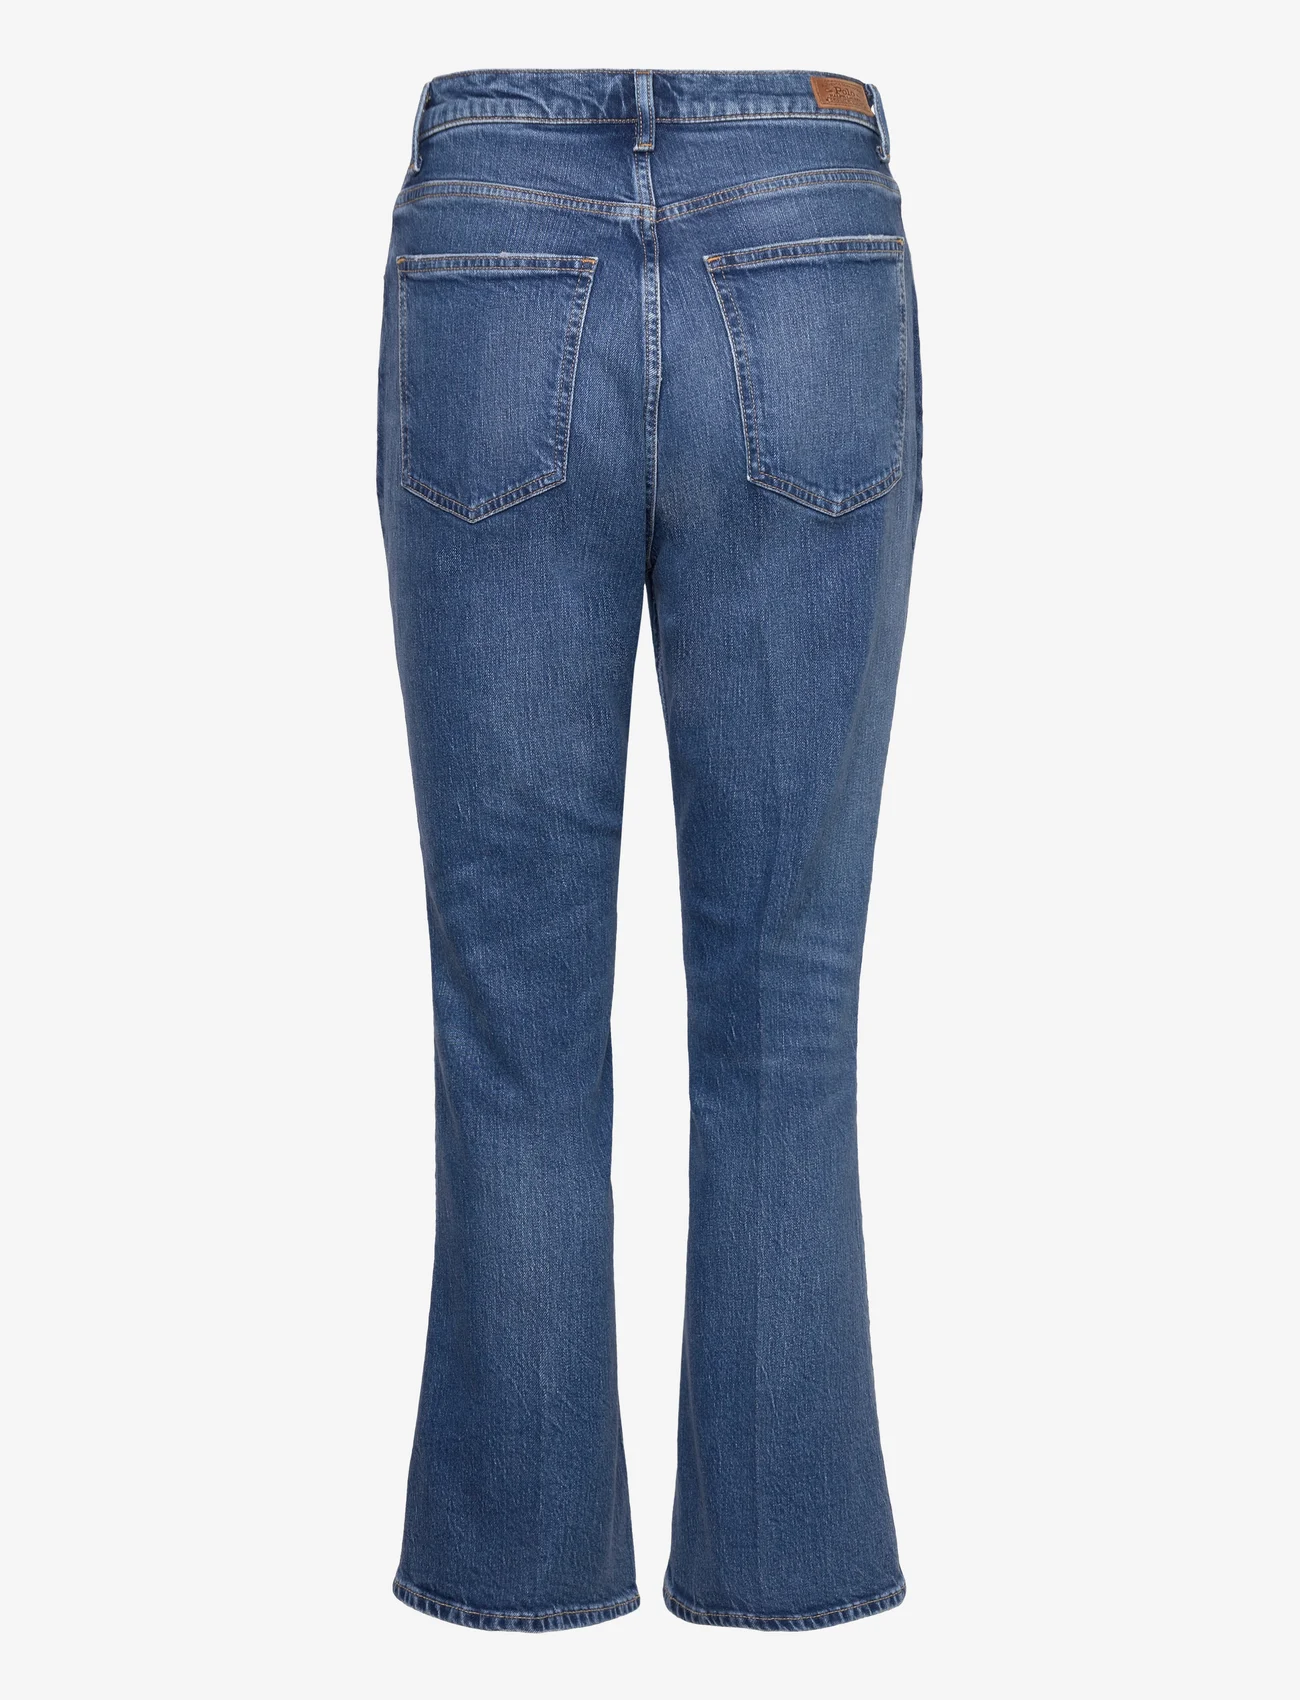 Polo Ralph Lauren - Flare Crop Jean - nuo kelių platėjantys džinsai - persei wash - 1